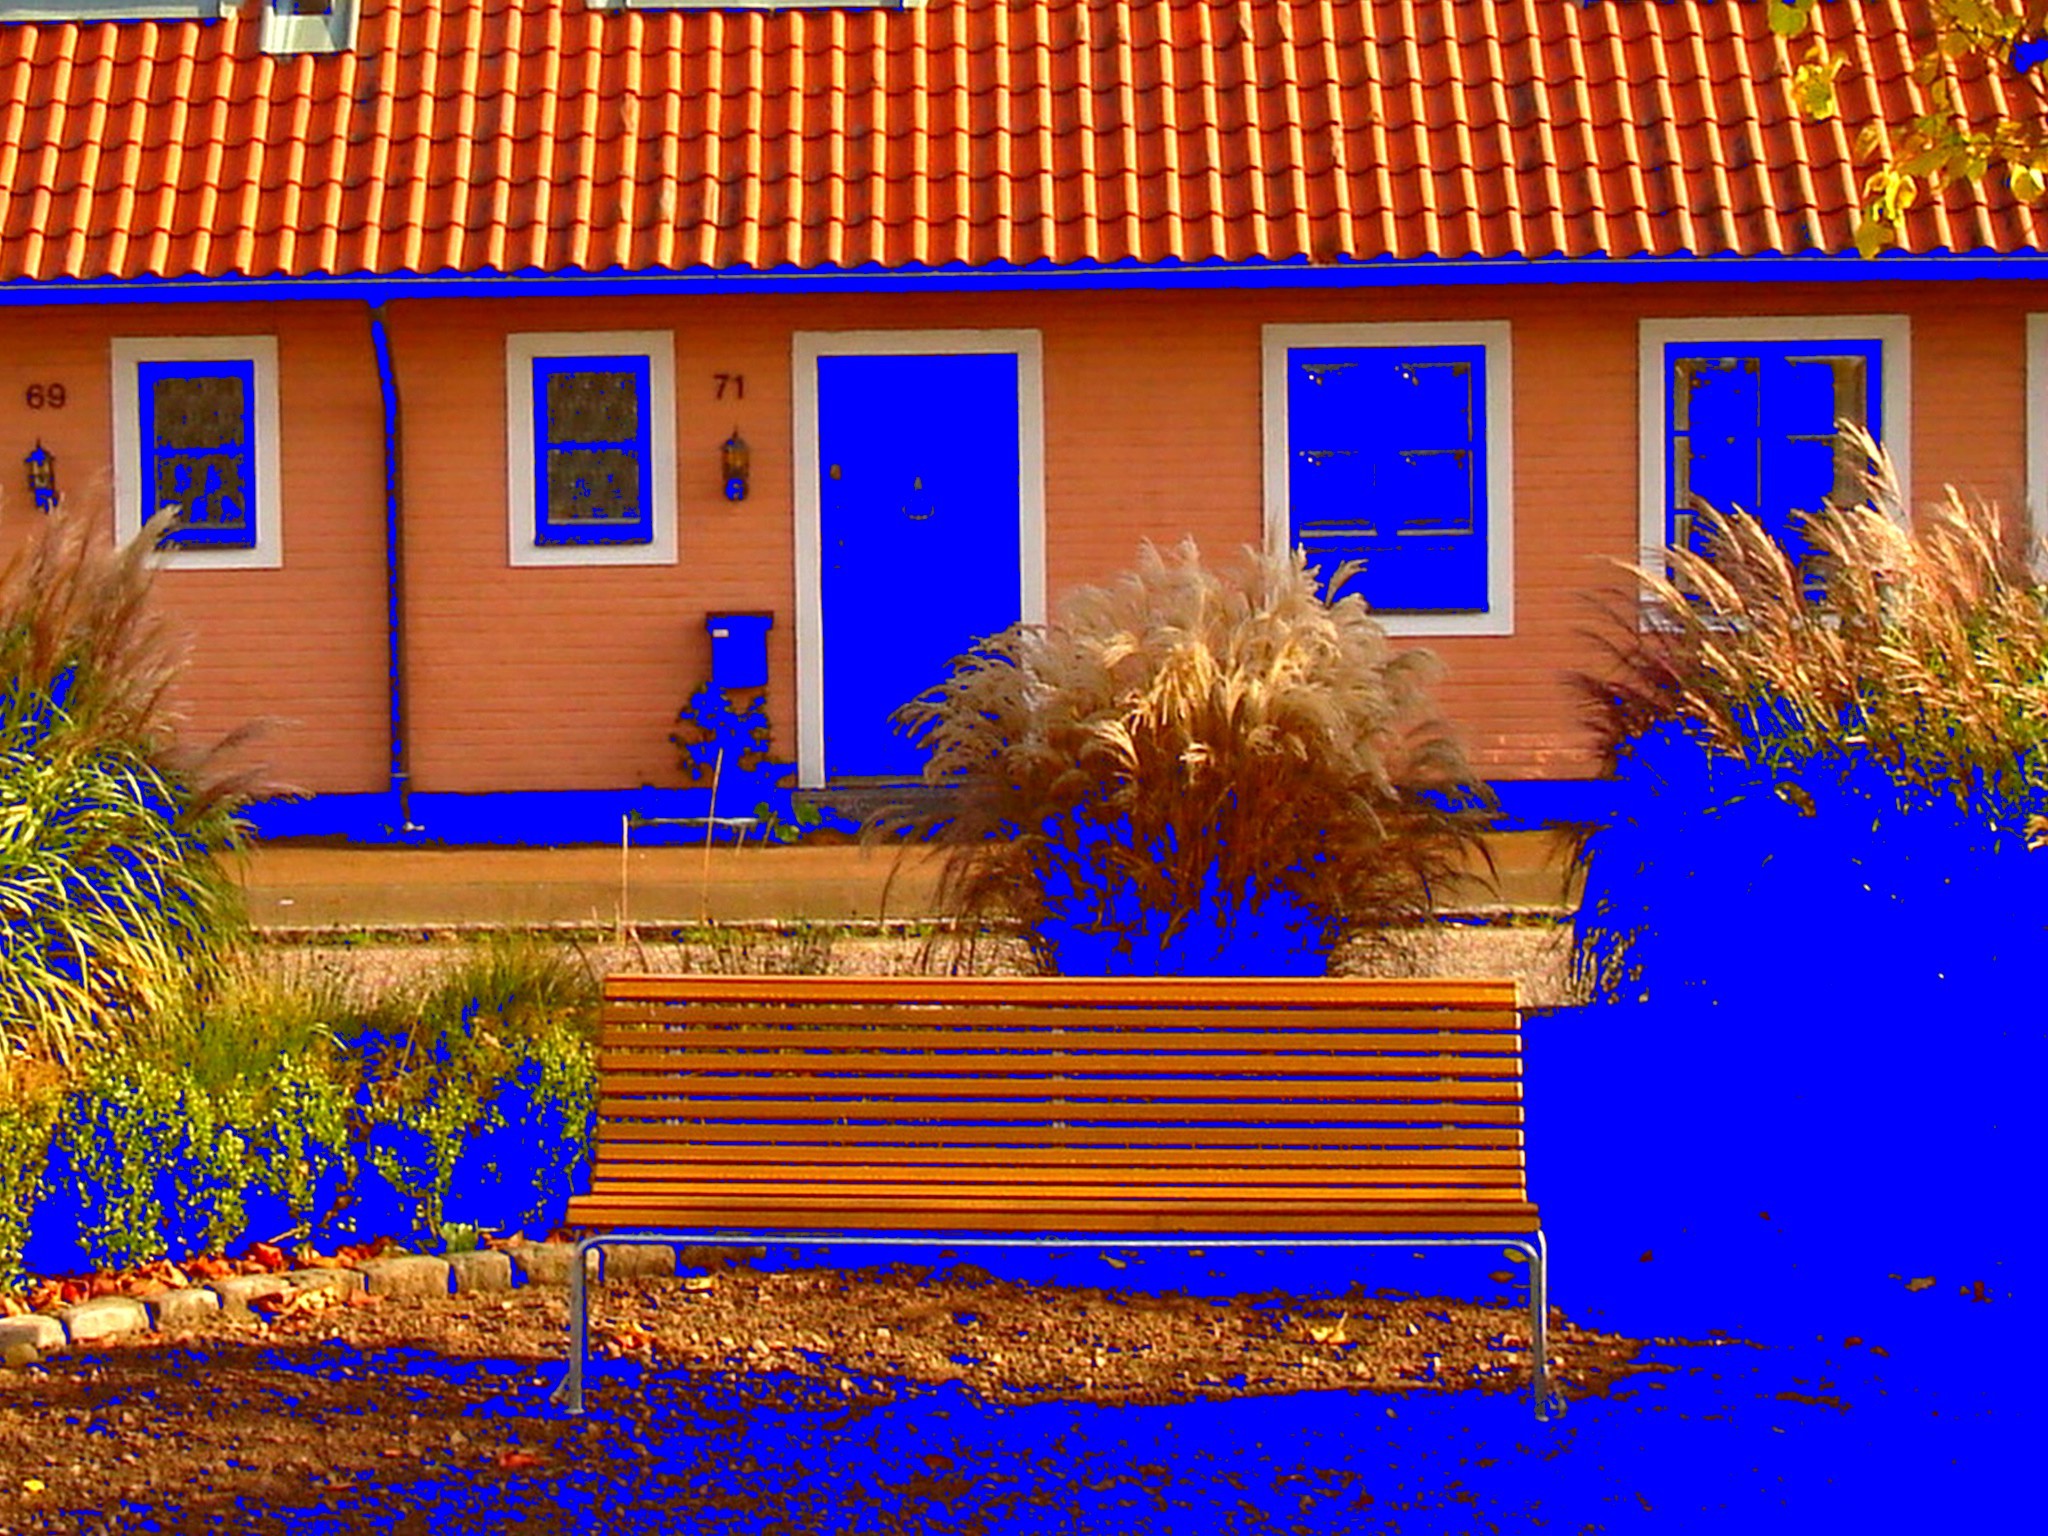 Båstad  /  Suède - Sweden.  25 octobre 2008 -  Négatif de négatif  avec changement de couleurs